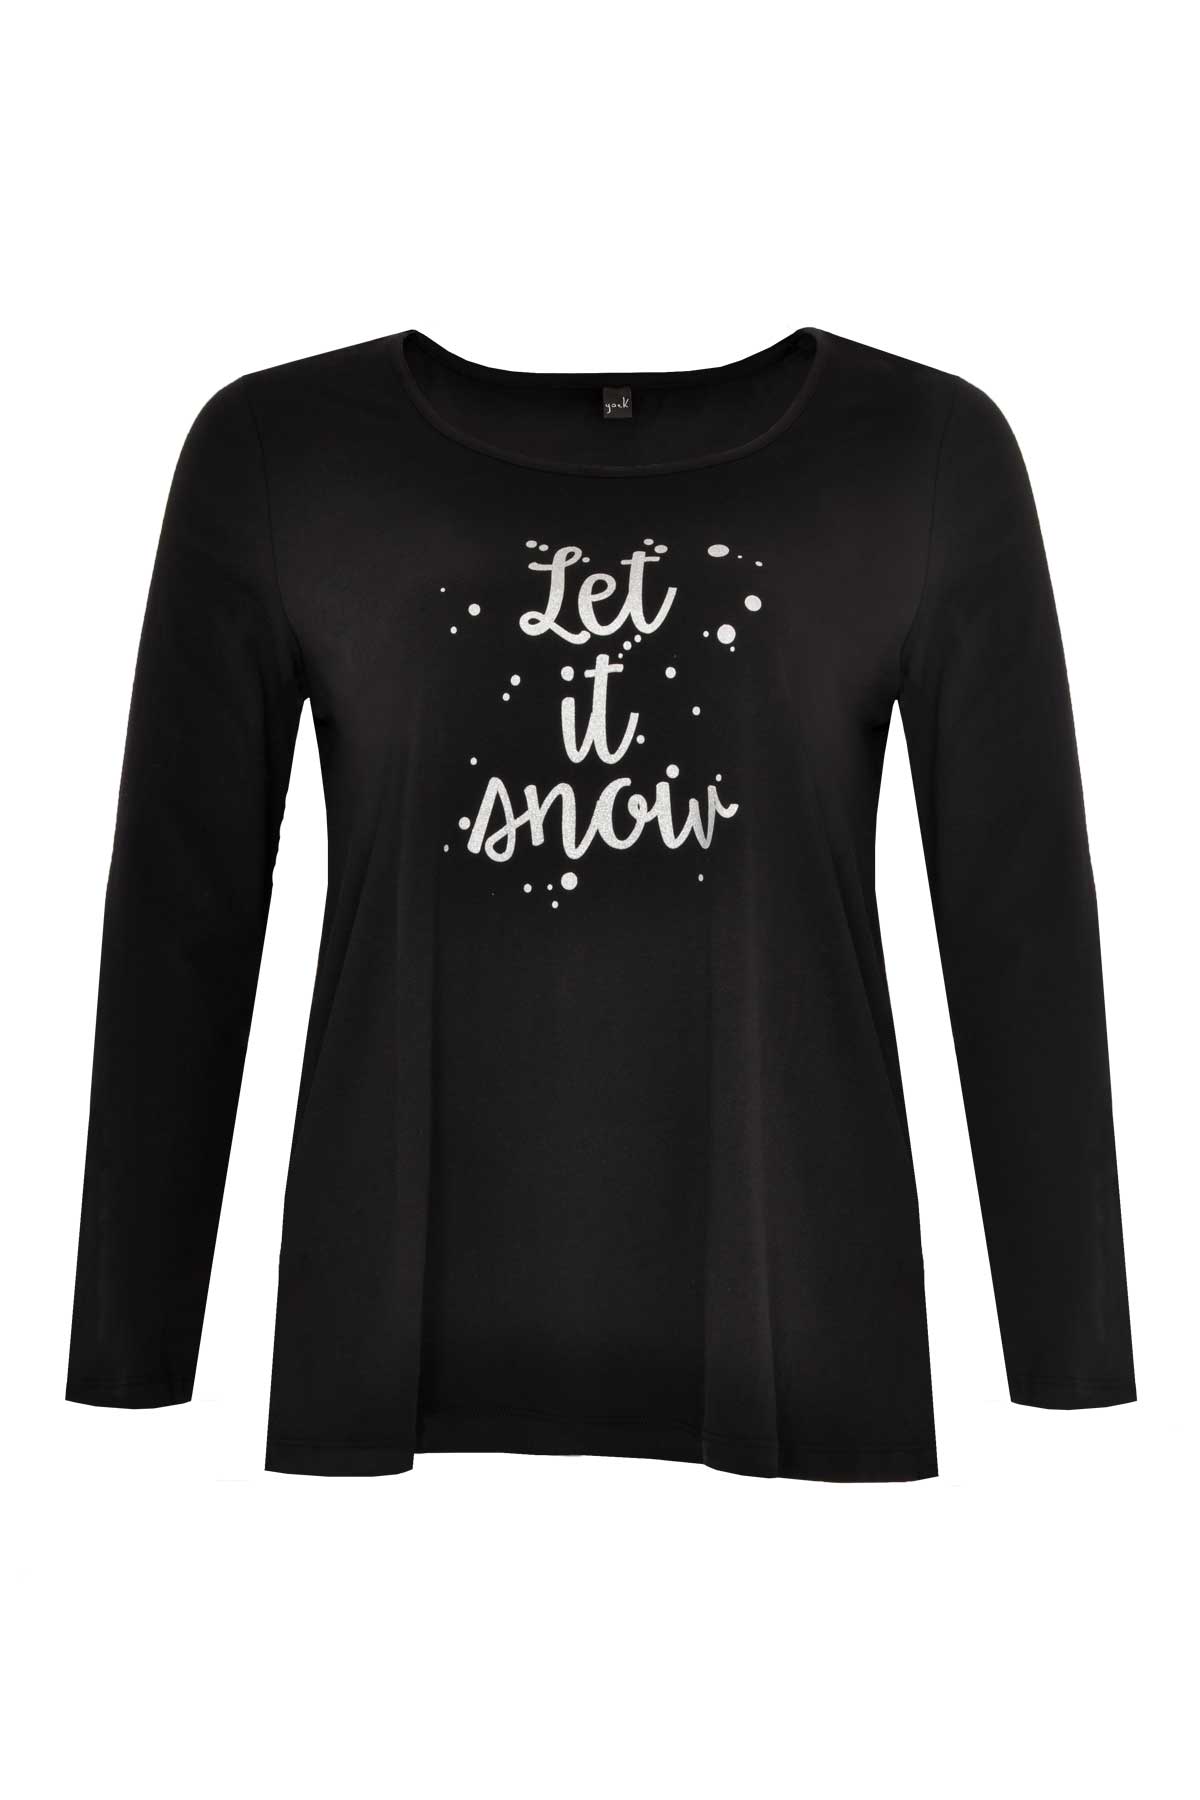 Yoek | Shirt a-line Let it snow